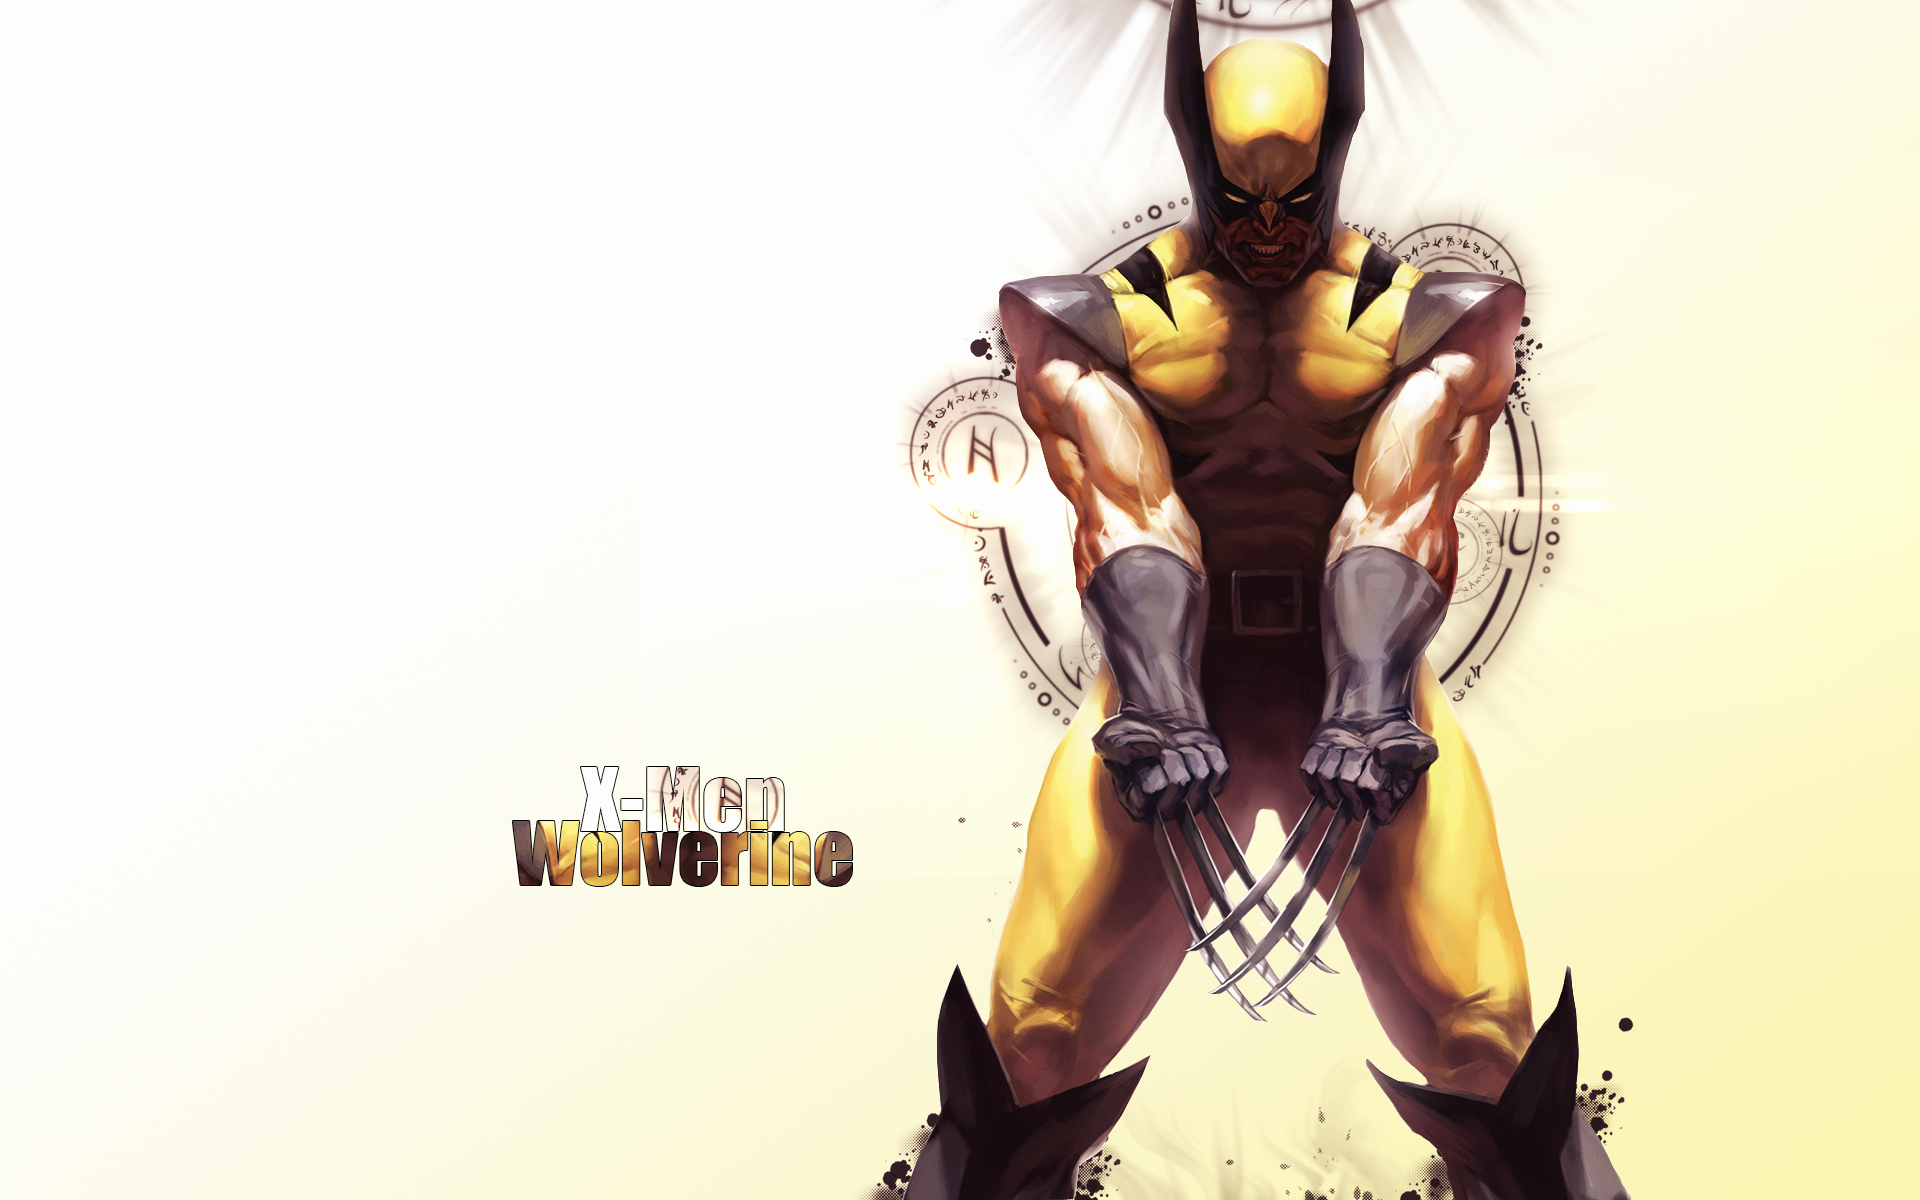 Riizq - Wolverine. - RaGEZONE Forums